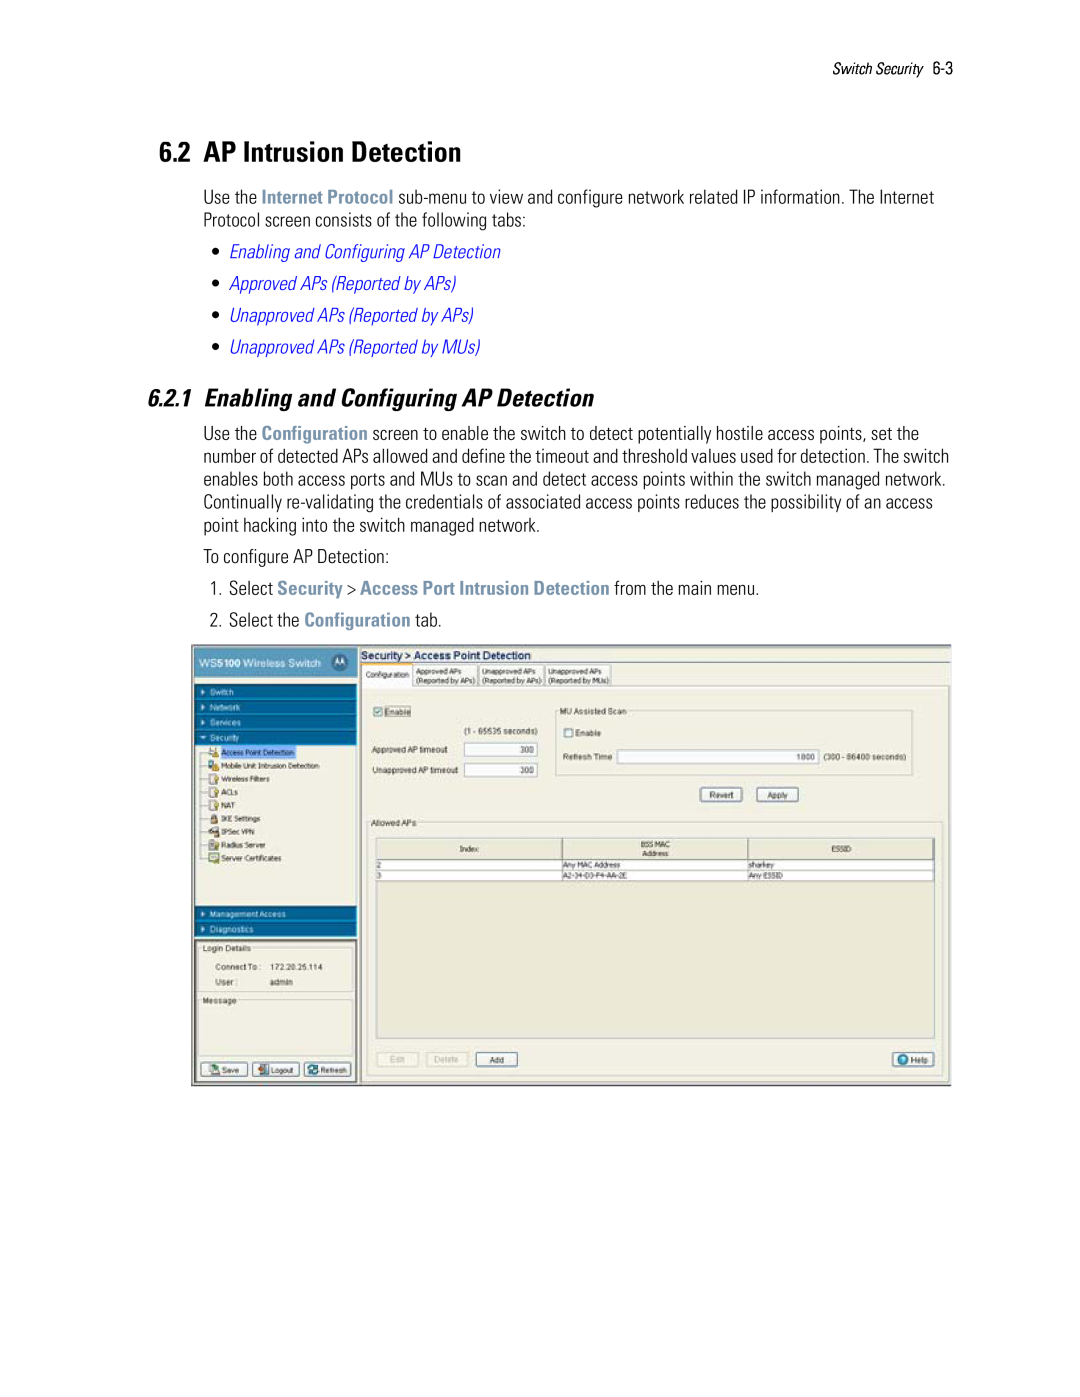 Motorola WS5100 AP Intrusion Detection, 6.2.1Enabling and Configuring AP Detection, •Enabling and Configuring AP Detection 